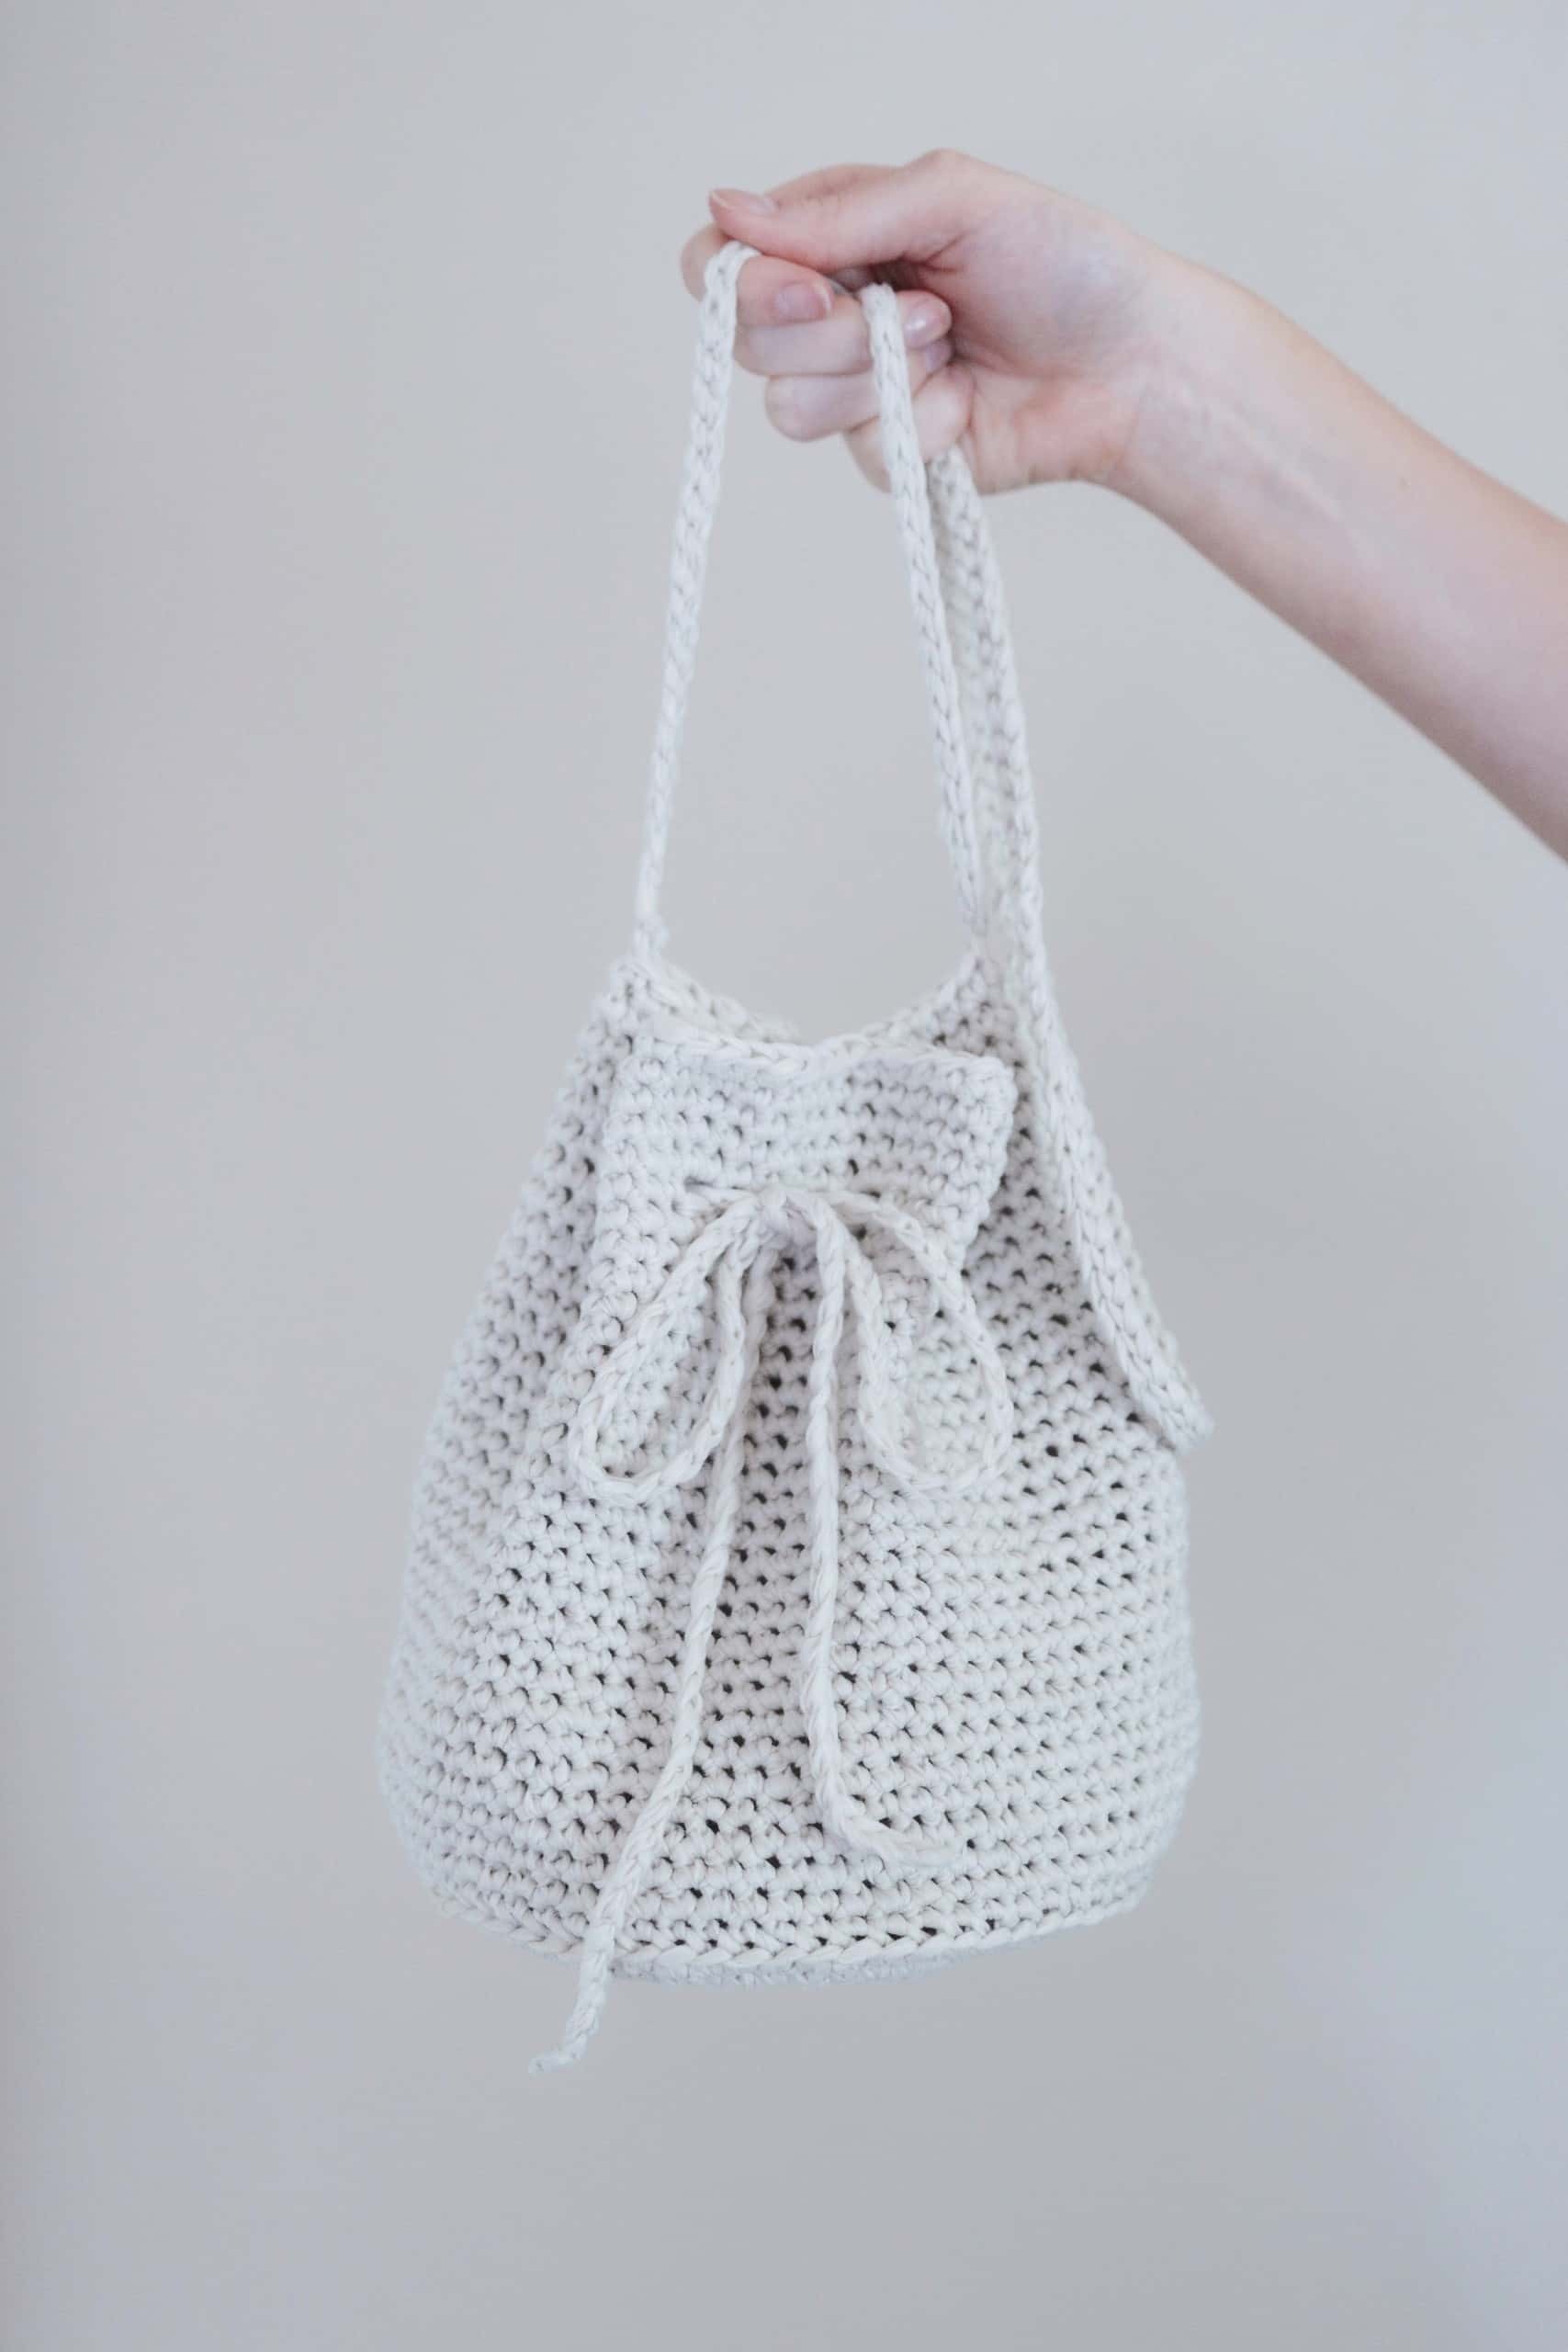 Crochet Tote Bag Pattern - Large Sturdy Purse | Free crochet bag, Crochet  bag pattern tote, Crochet bag pattern free